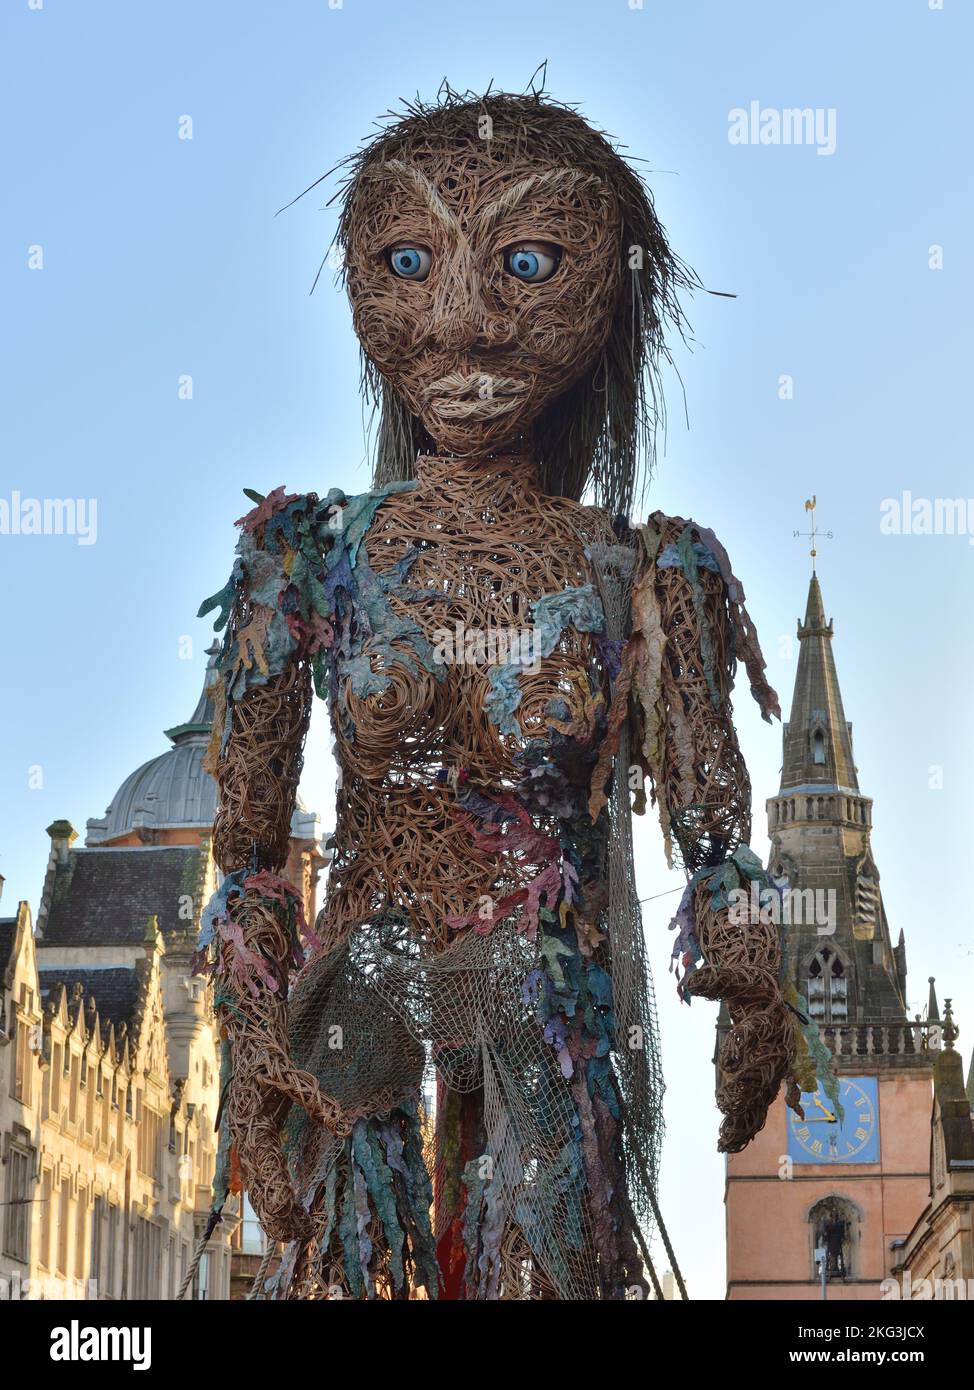 La marionnette géante de 10m haut appelée 'Storm', de Vision Mechanics, est venue de la mer pour marcher dans les rues du centre-ville de Glasgow, à la Trongate, en Écosse Banque D'Images